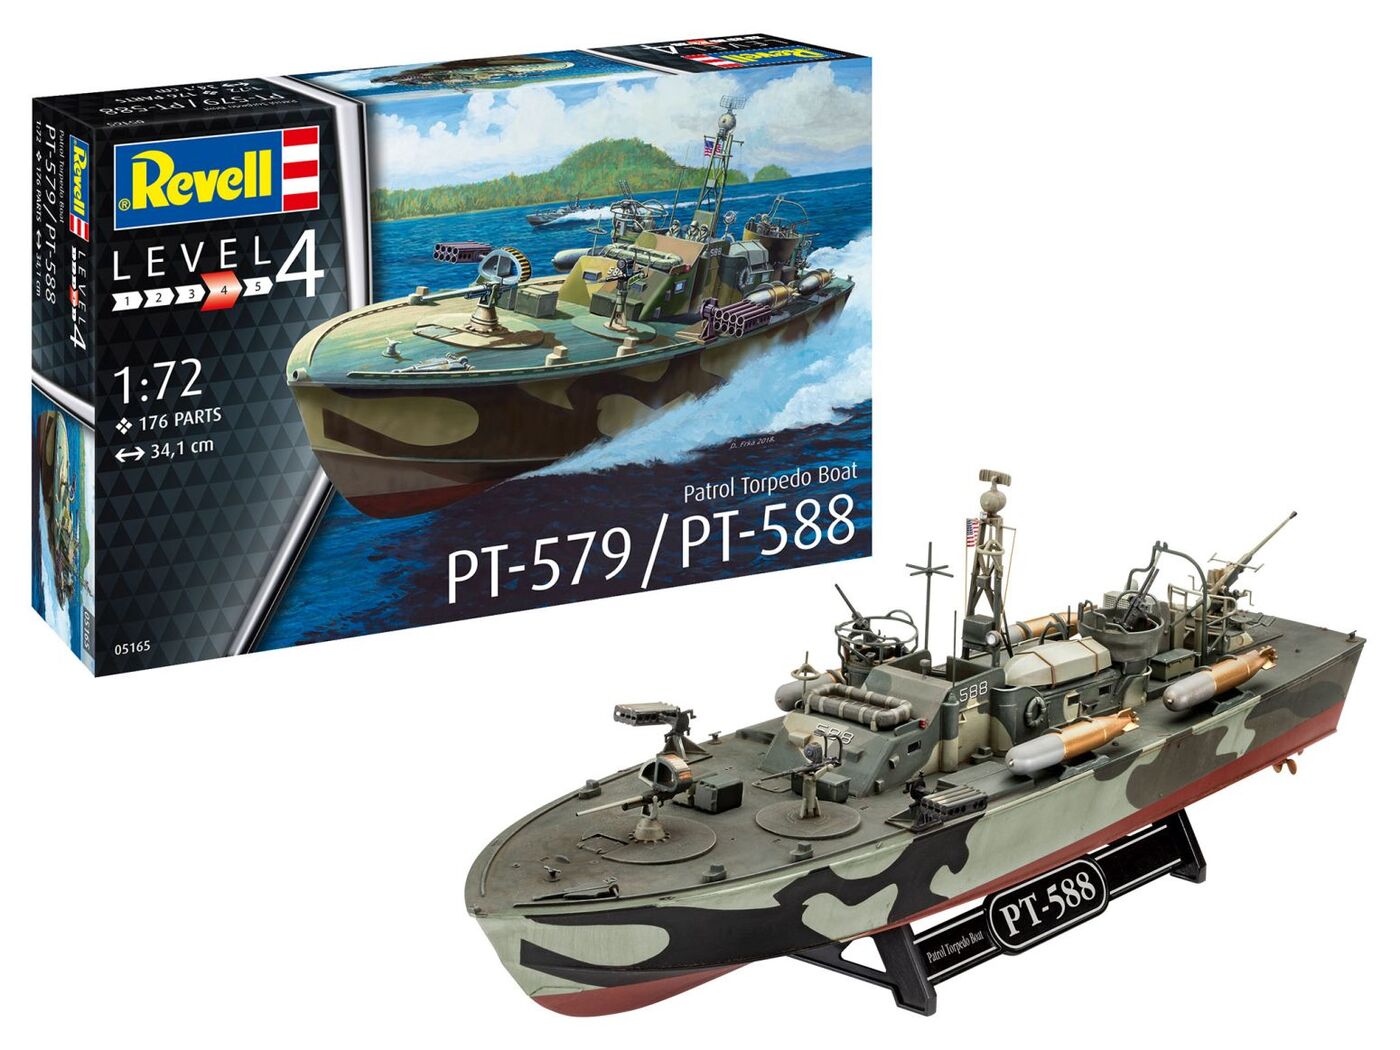 Купить Сборная модель Патрульная Торпедная Лодка PT-588/PT-579, Revell,